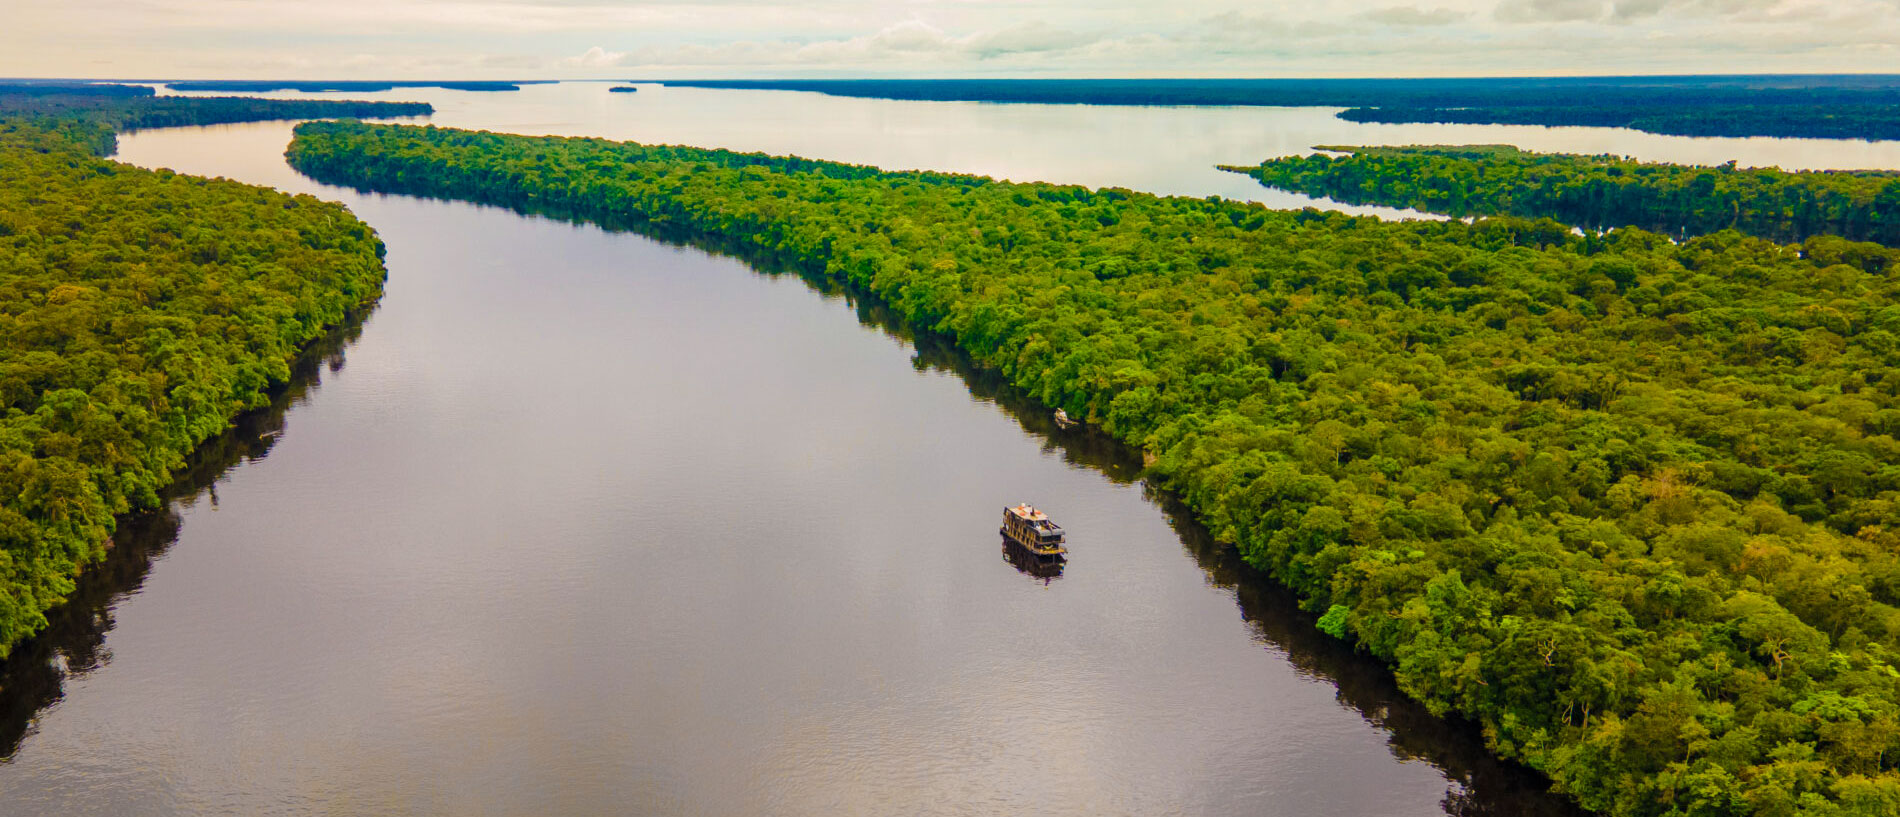 Amazon River Cruise Amazonia Brazil Tours